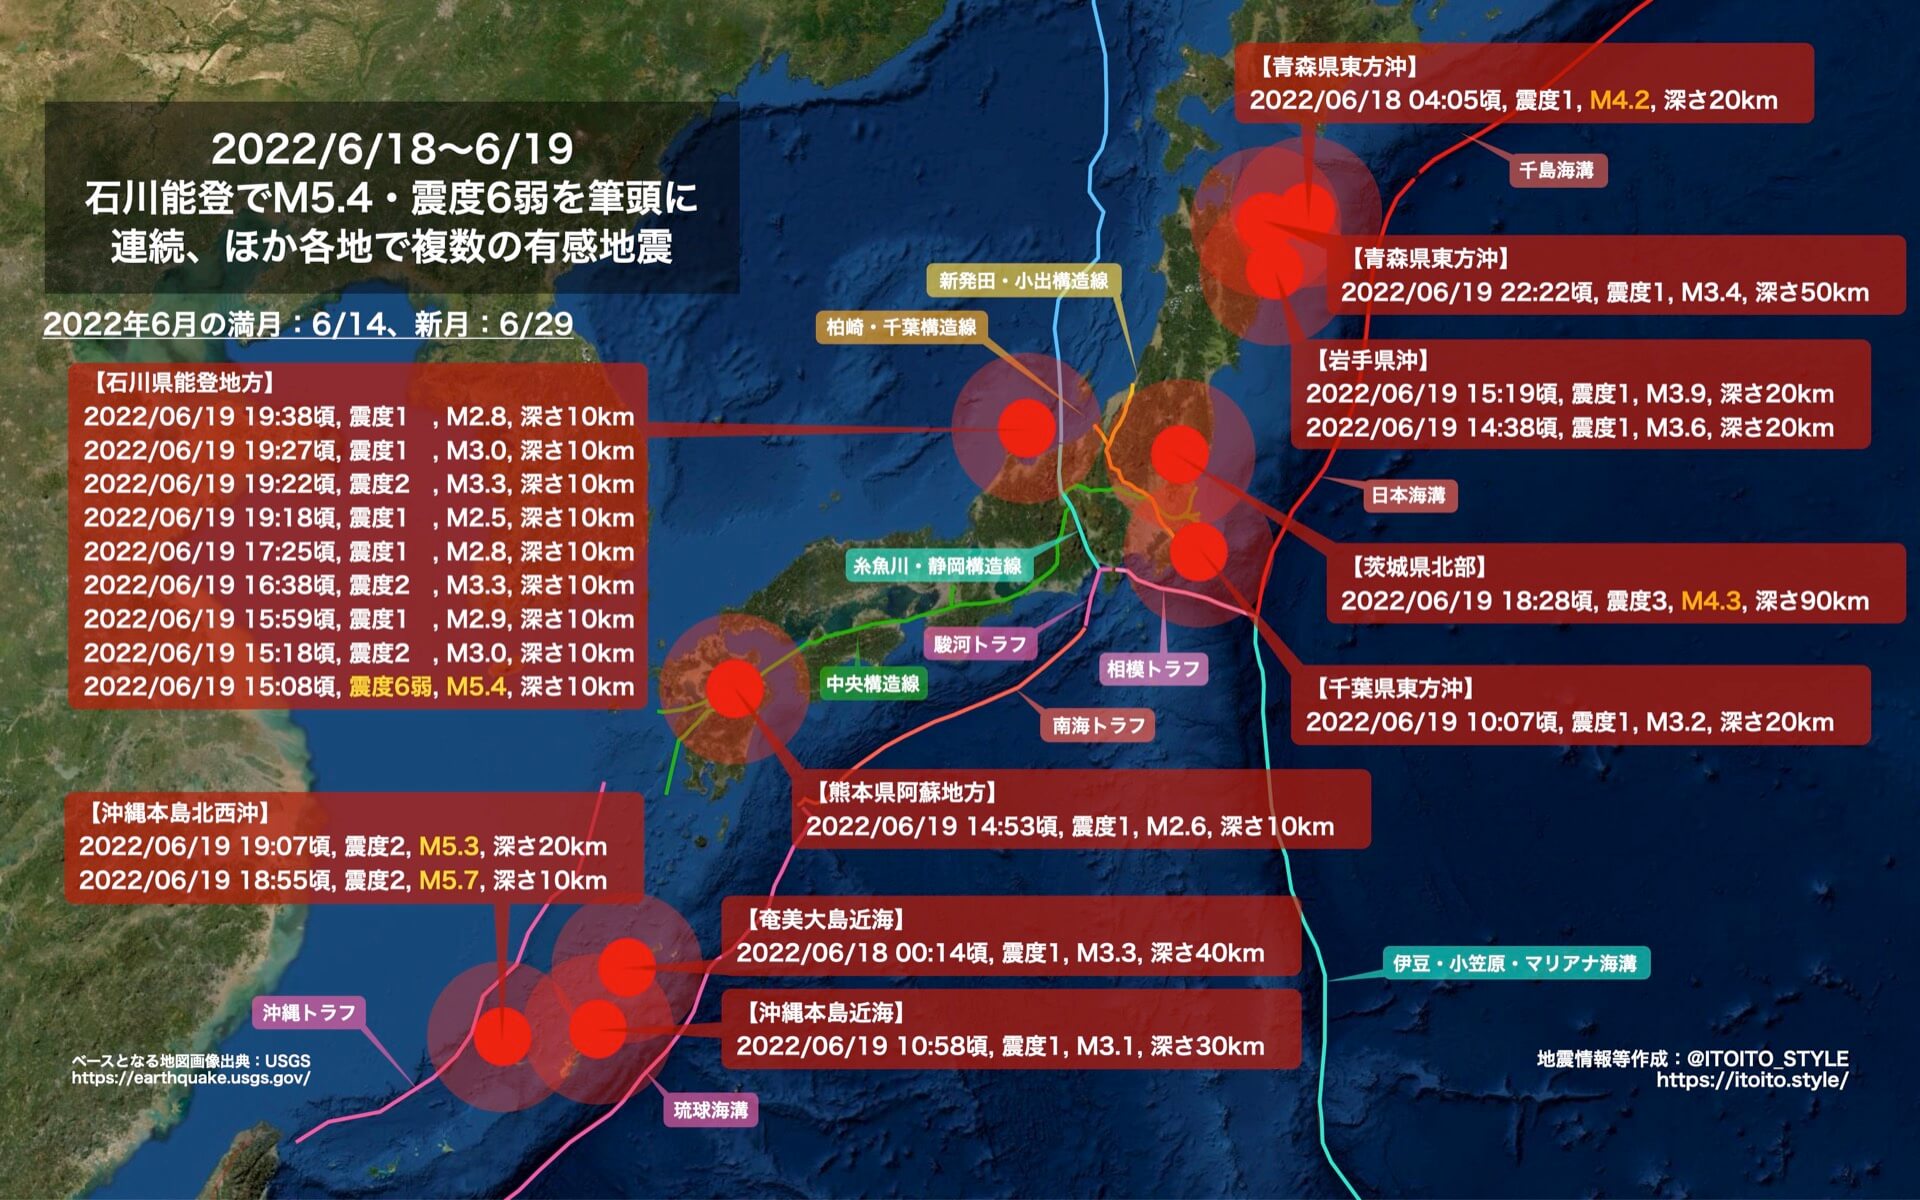 報地震 - 中央氣象署 - 2024年1月1日日本能登半島地震事件說明，請參考中央氣象署網站最新消息。...